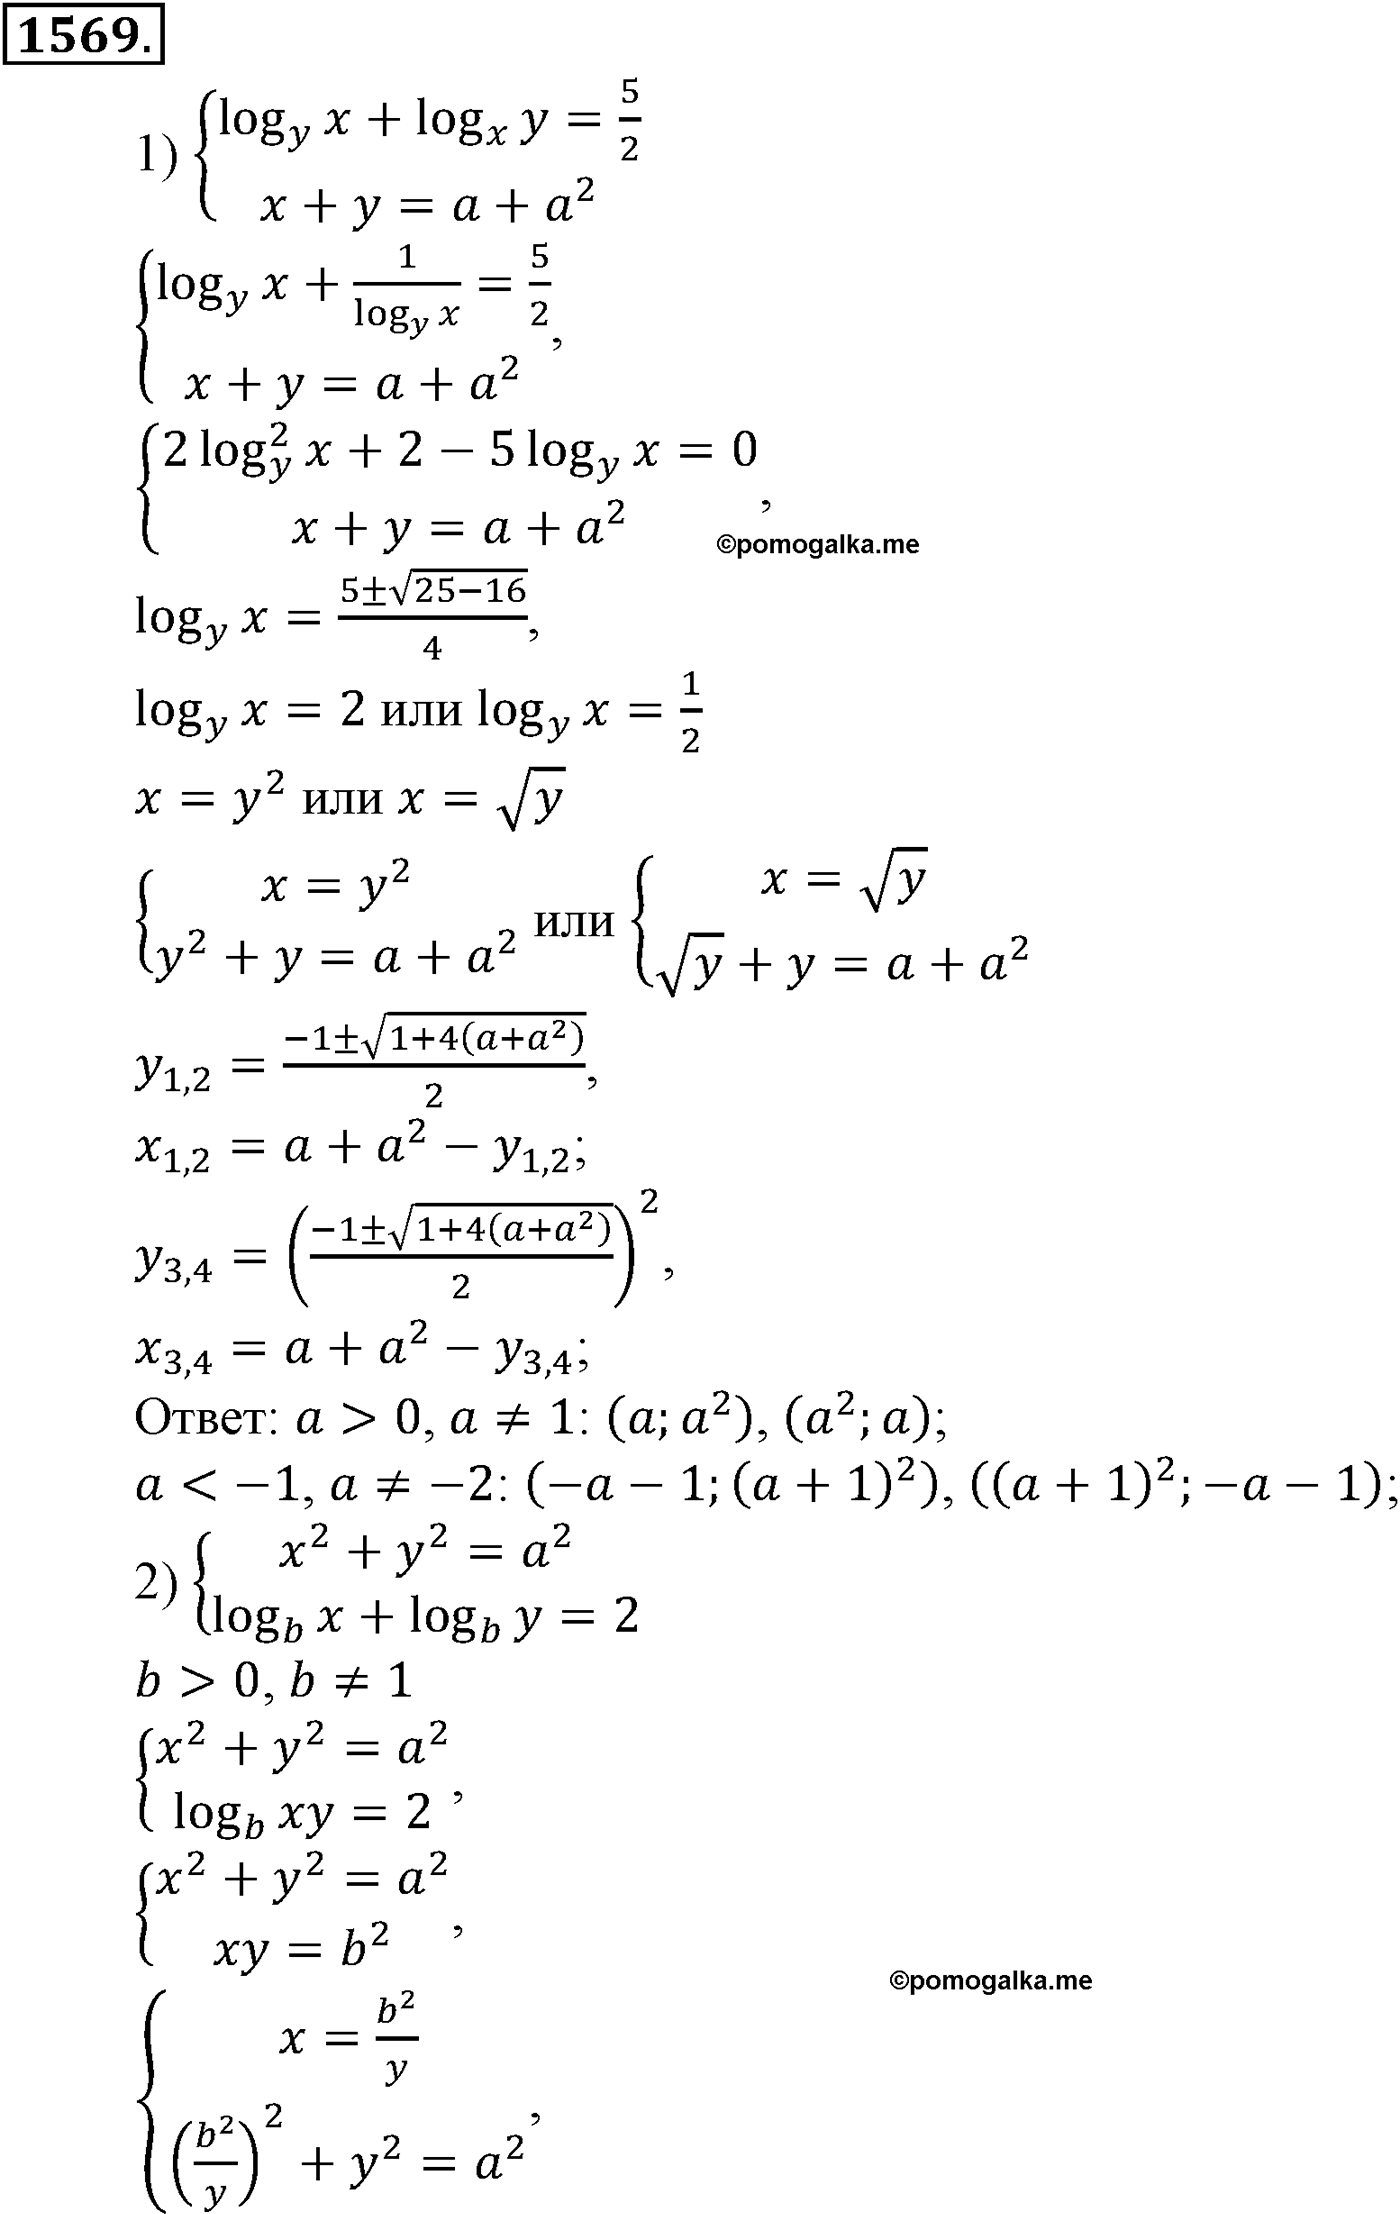 разбор задачи №1569 по алгебре за 10-11 класс из учебника Алимова, Колягина